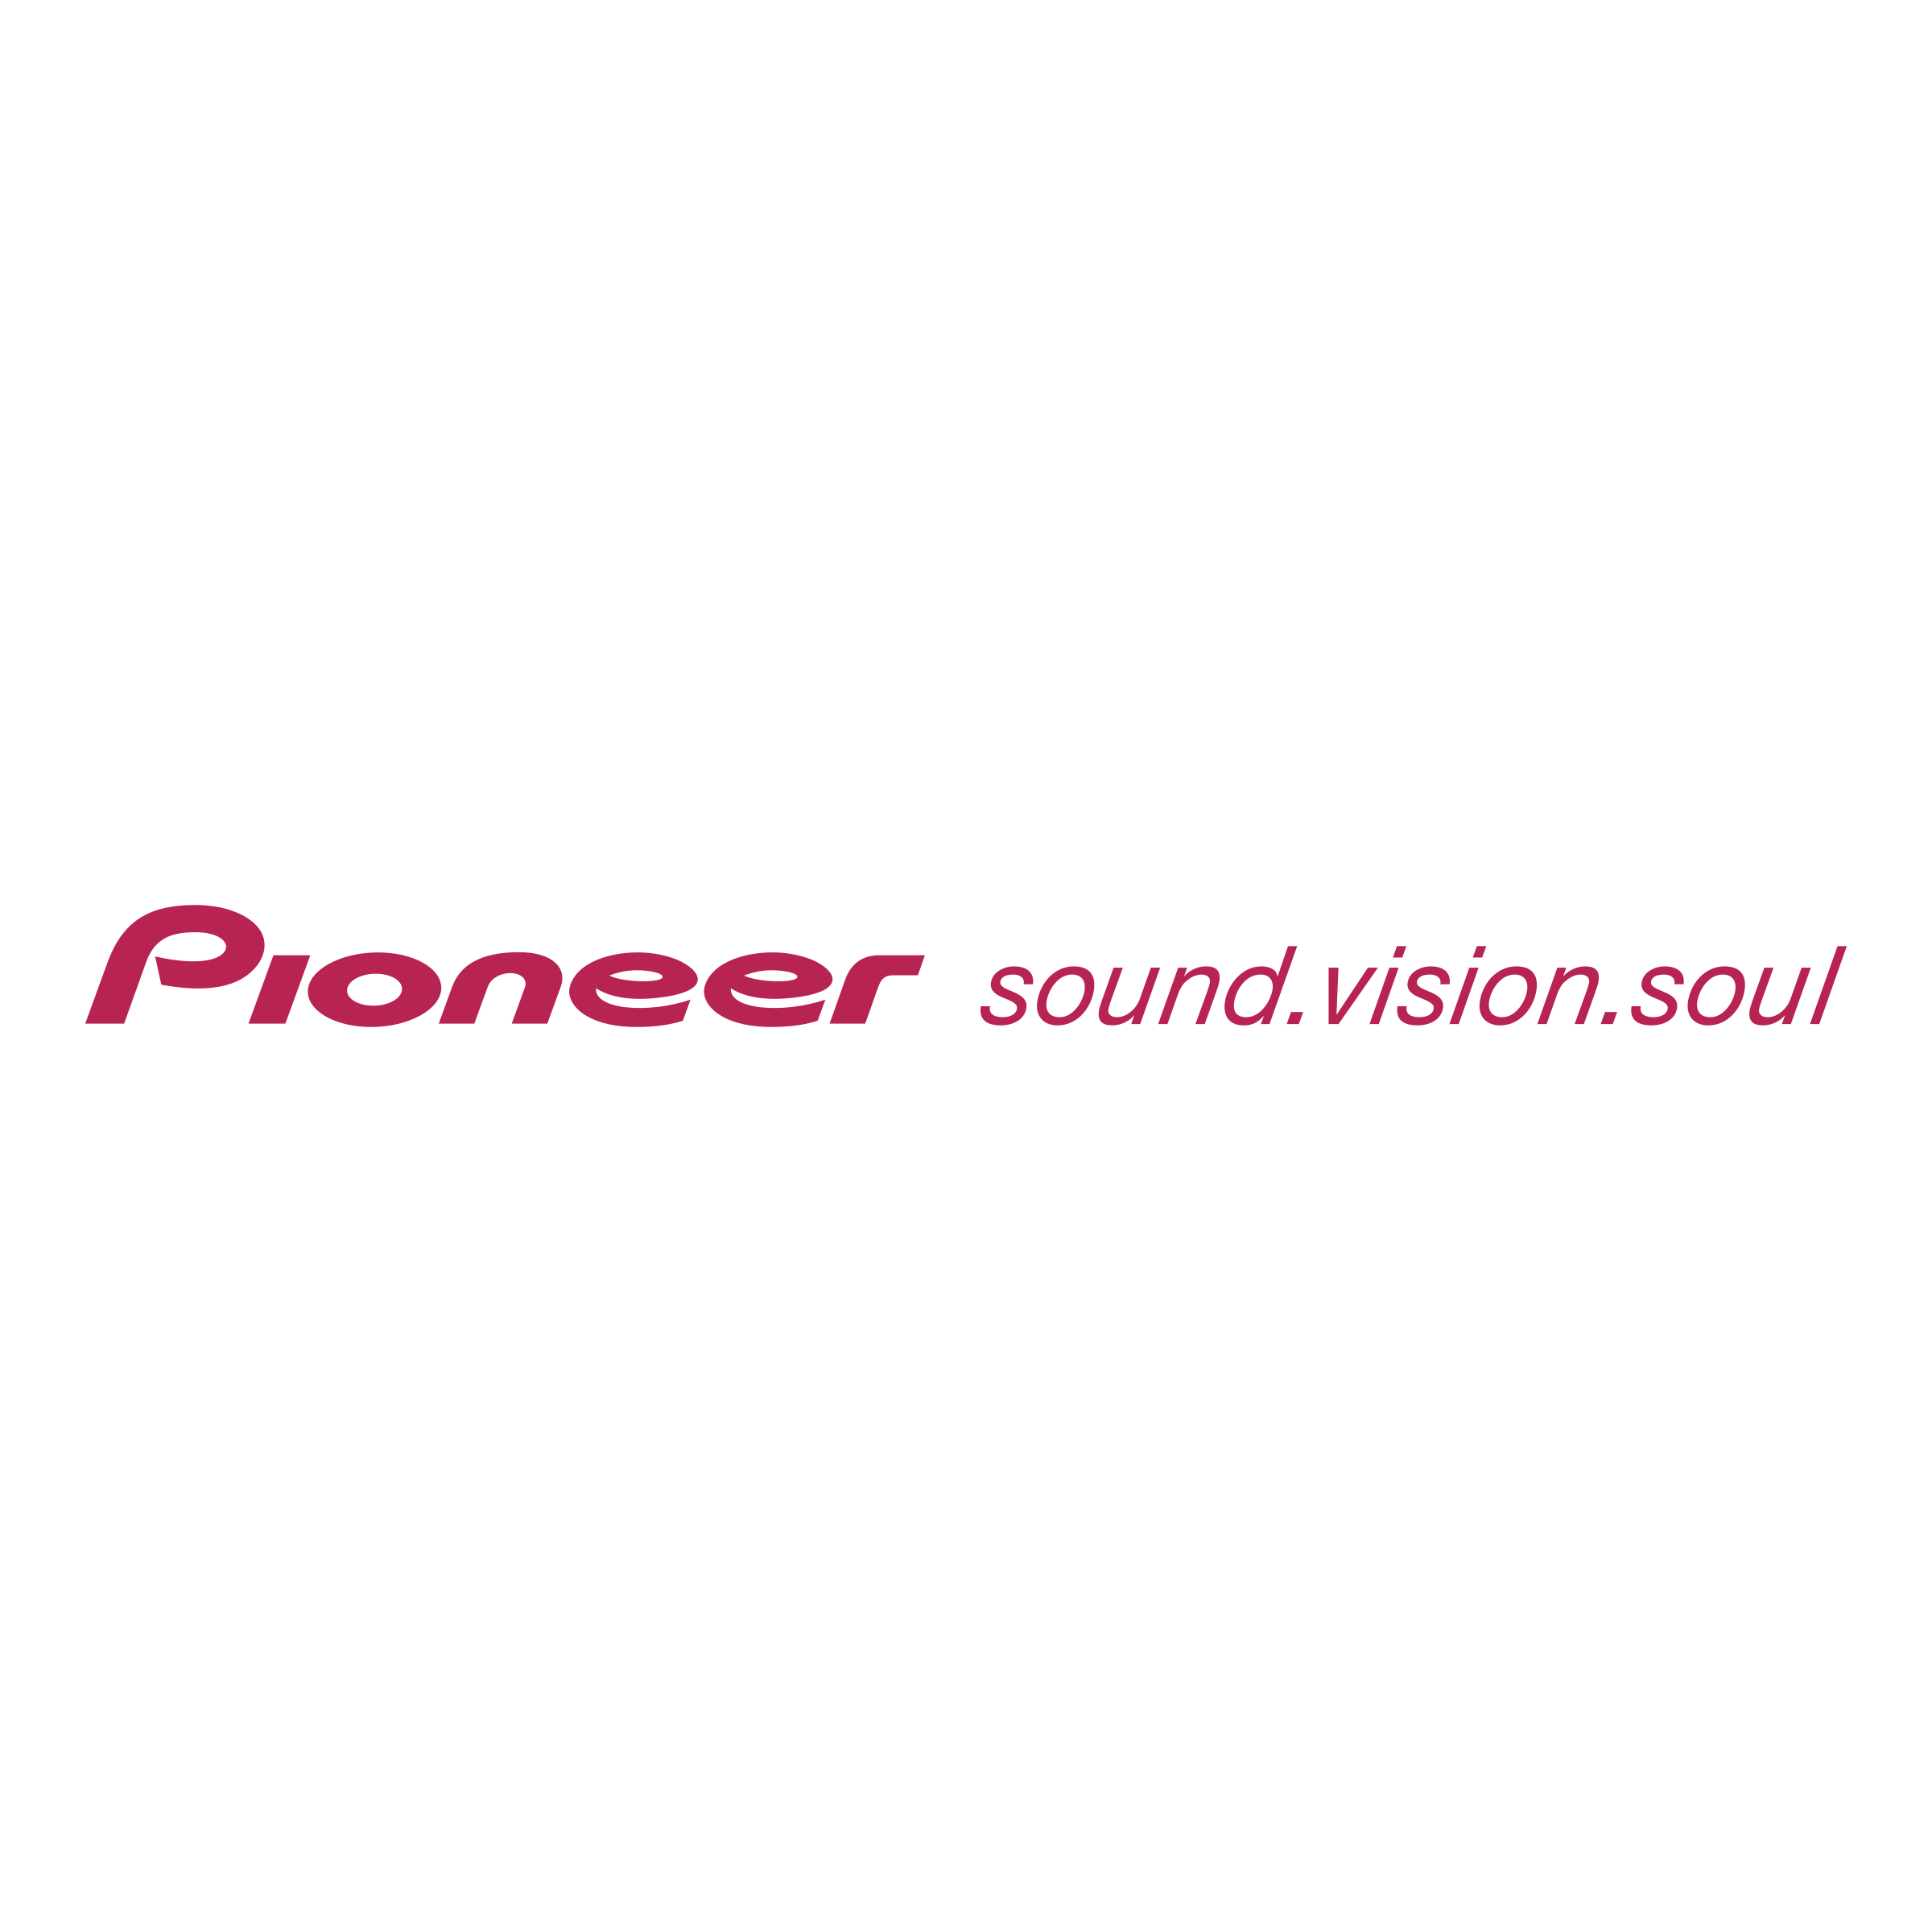 Pioneer Dj Logo | Pioneer Log